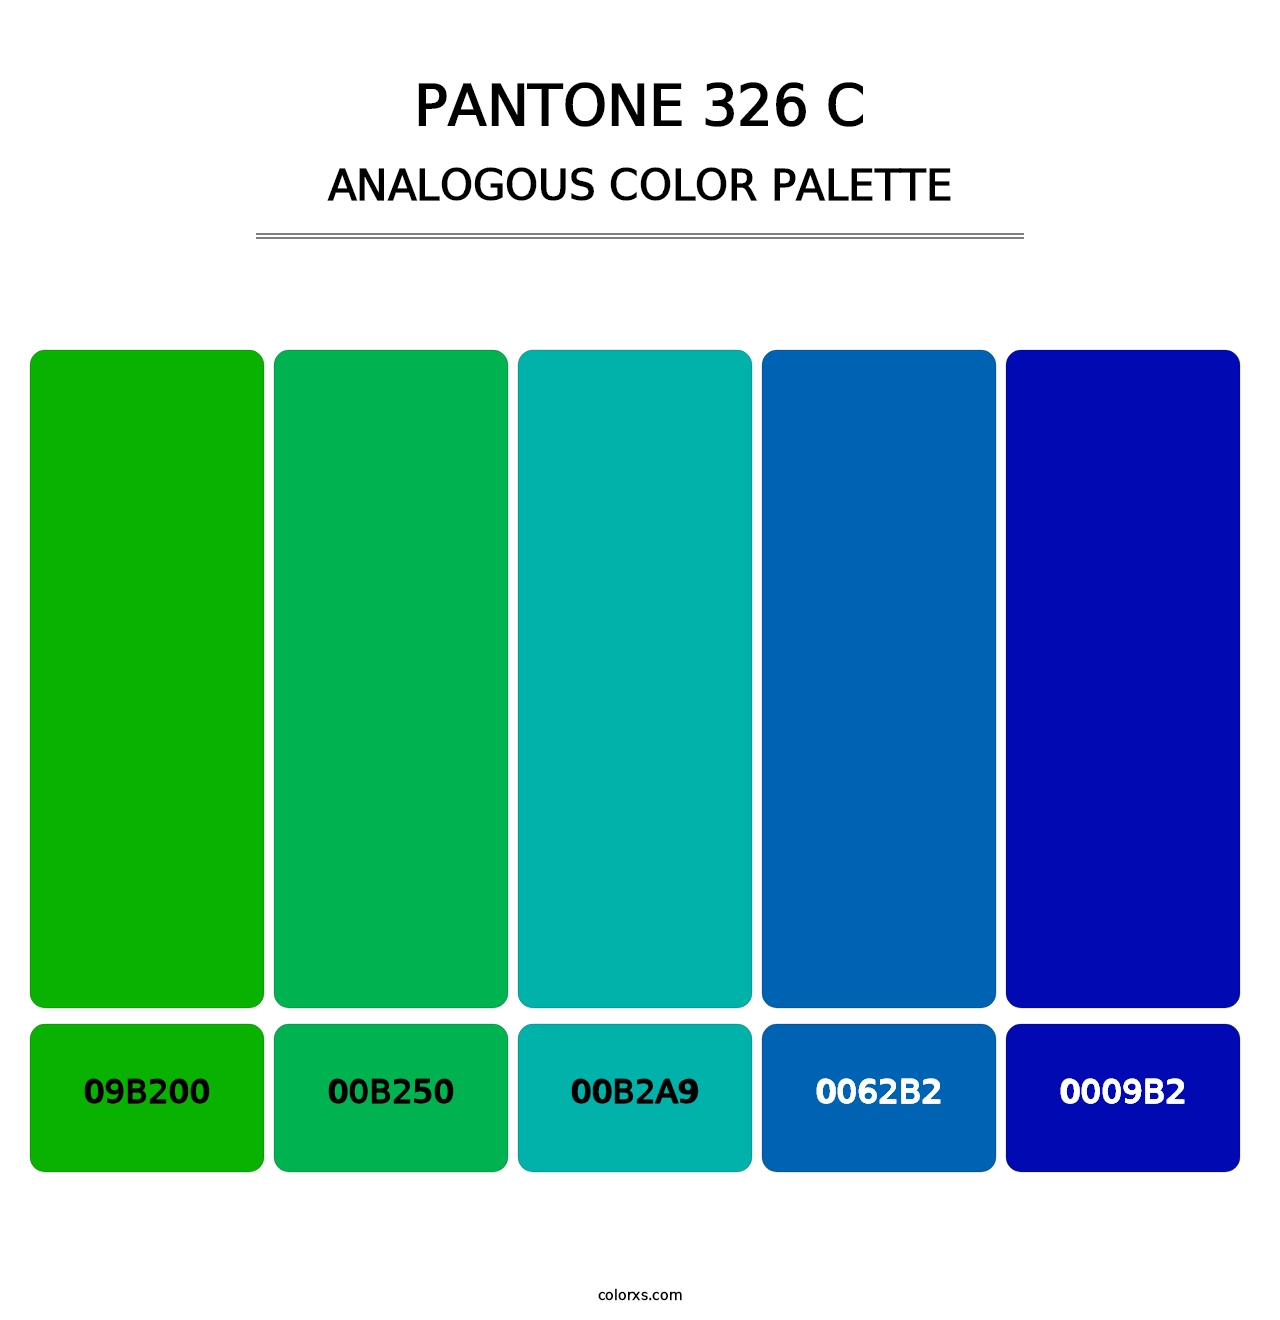 PANTONE 326 C - Analogous Color Palette